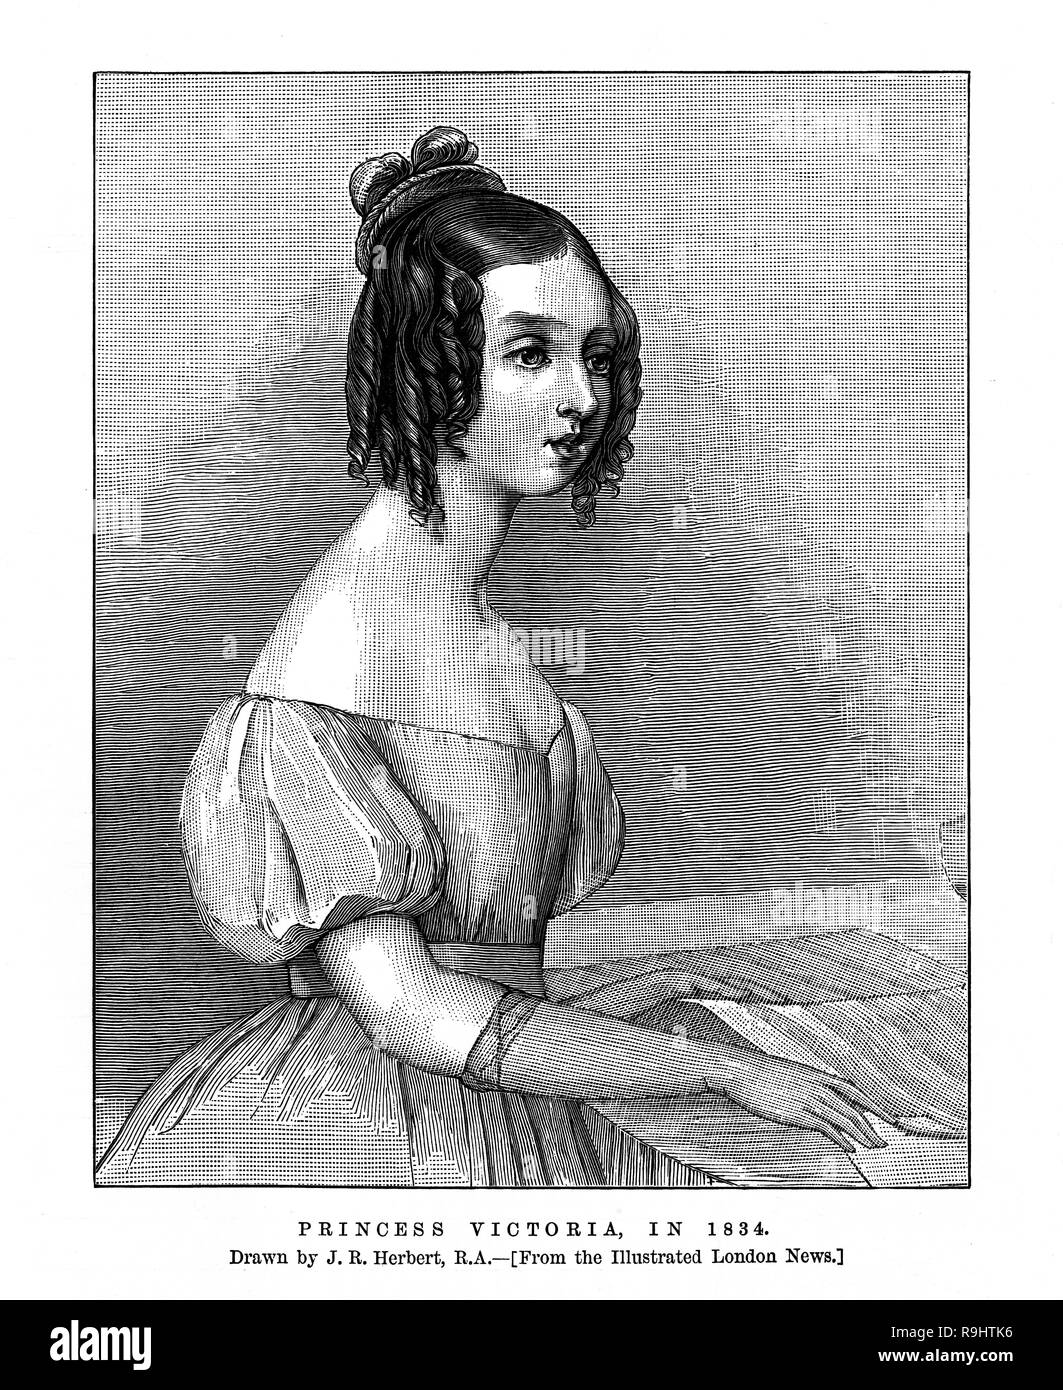 Gravure portrait montrant une jeune princesse Victoria en 1834 de l'Illustrated London News édition anniversaire Juin 1887 Banque D'Images